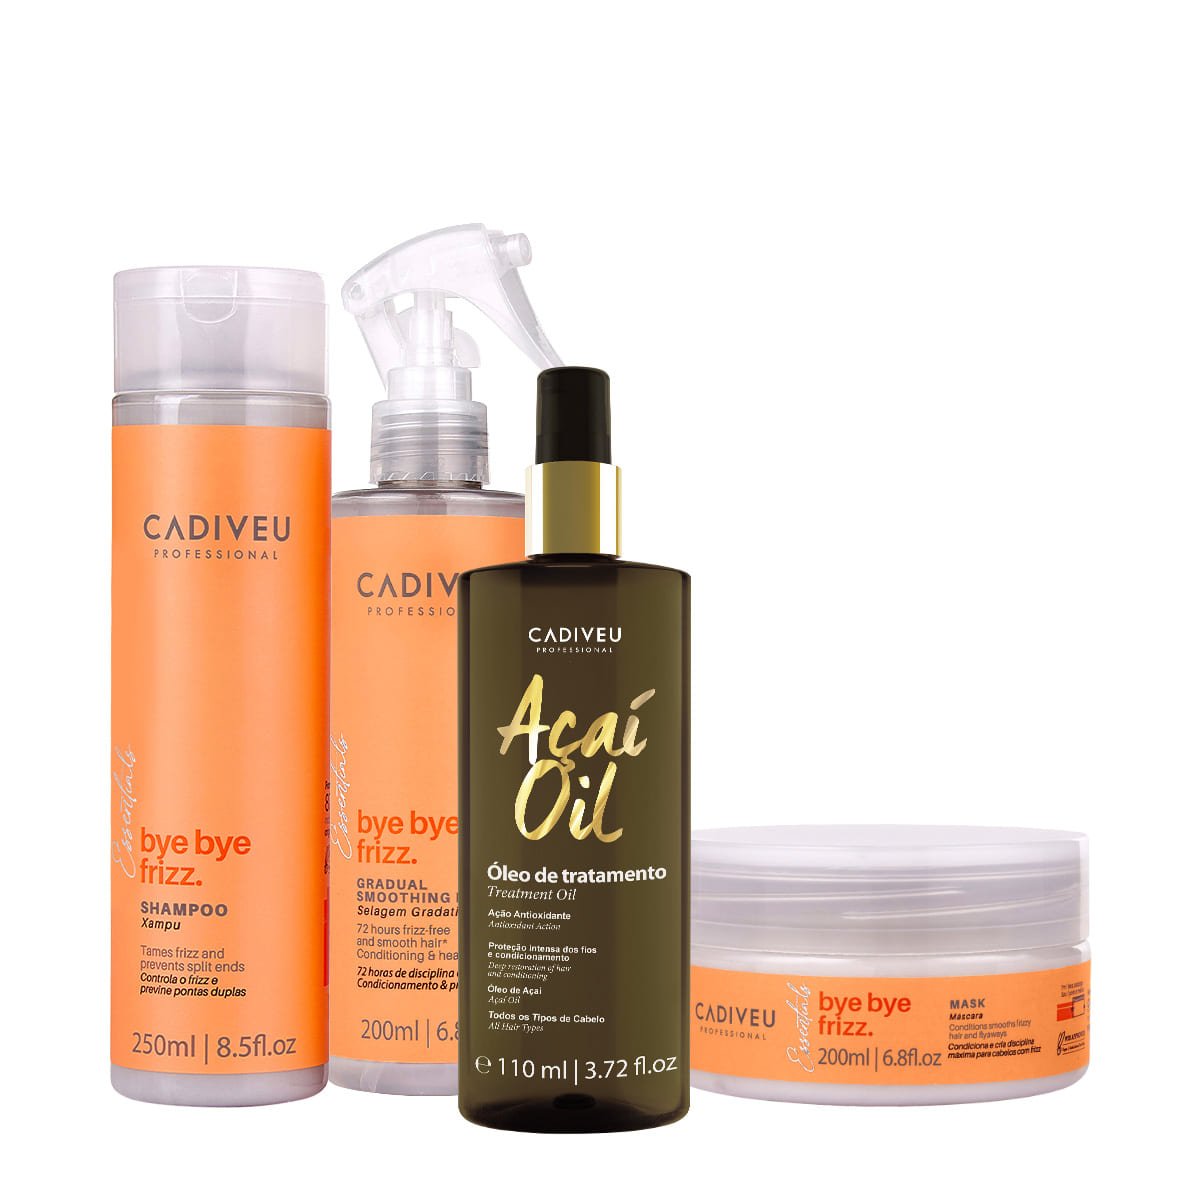 Kit Cadiveu Professional Bye Bye Frizz Shampoo Mascara Selagem Gradativa e Acai Oil 110 (4 produtos)